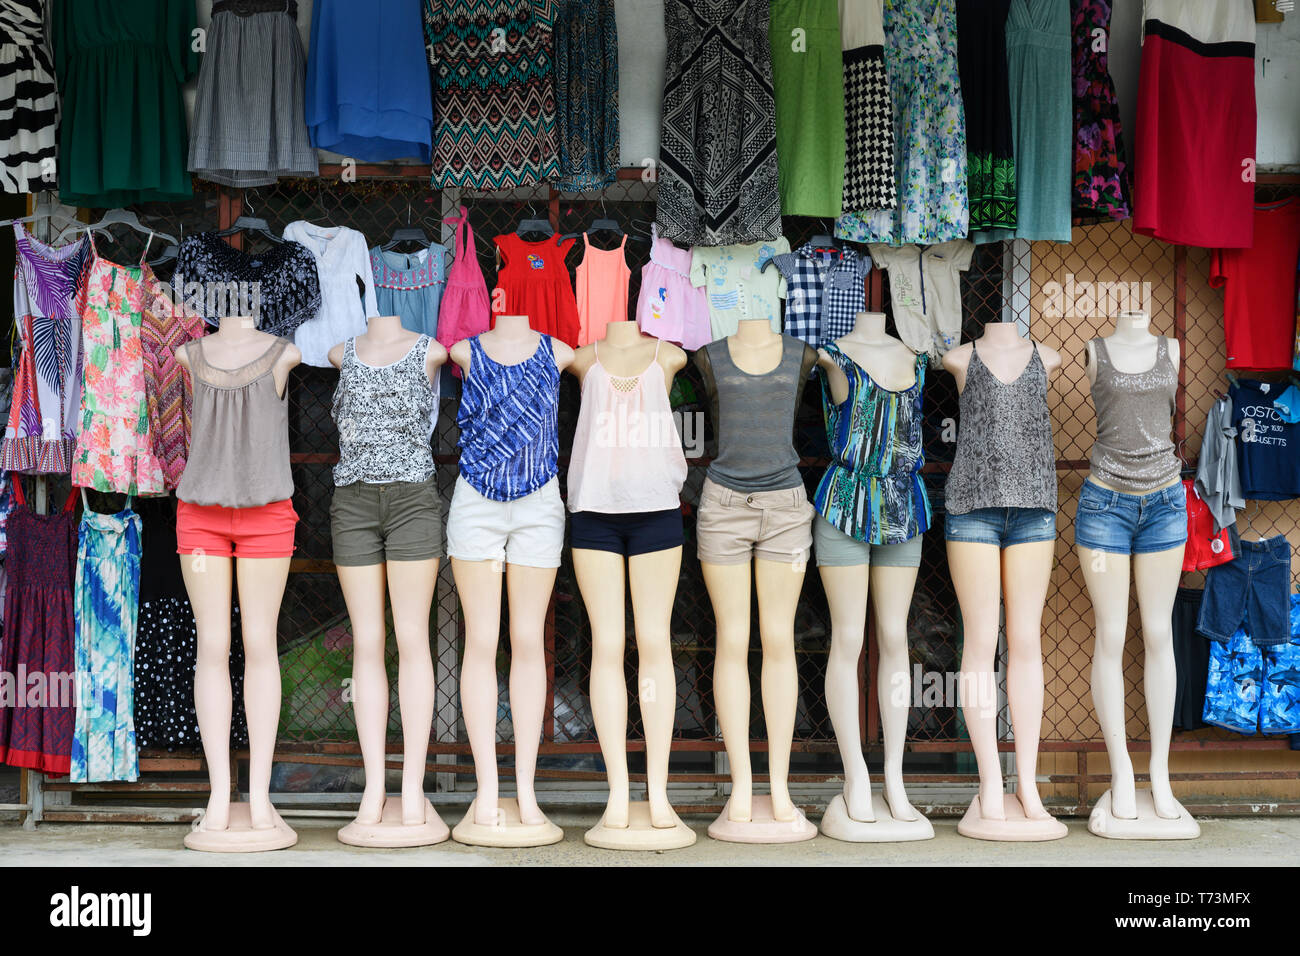 Kleidung für Frauen auf Anzeige auf Puppen in einer Reihe stehen, Roatan, Bay Islands, Honduras Stockfoto